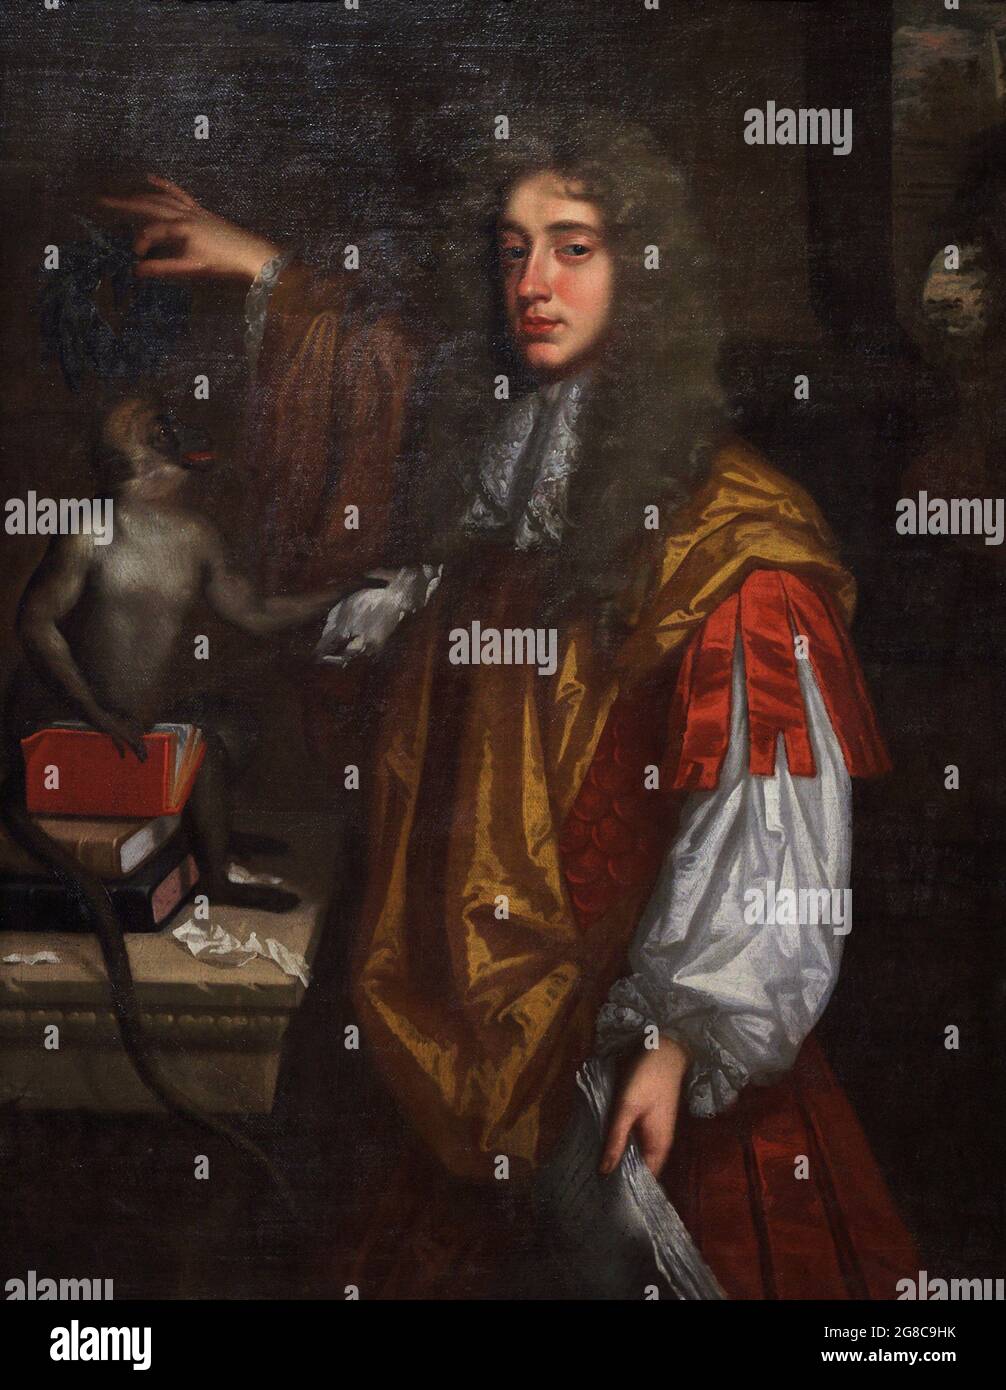 John Wilmot, 2. Earl of Rochester (1647-1680). Englischer Dichter. Portrait eines unbekannten Künstlers, der Wilmot auf einem Bücherhaufen mit Lorbeer krönt, bietet ihm der Affe ein Stück Papier mit zerfetzten Versen an. Satirischer Ton. Öl auf Leinwand (127 x 99,1 cm), ca. 1665-1670. National Portrait Gallery. London, England, Vereinigtes Königreich. Stockfoto